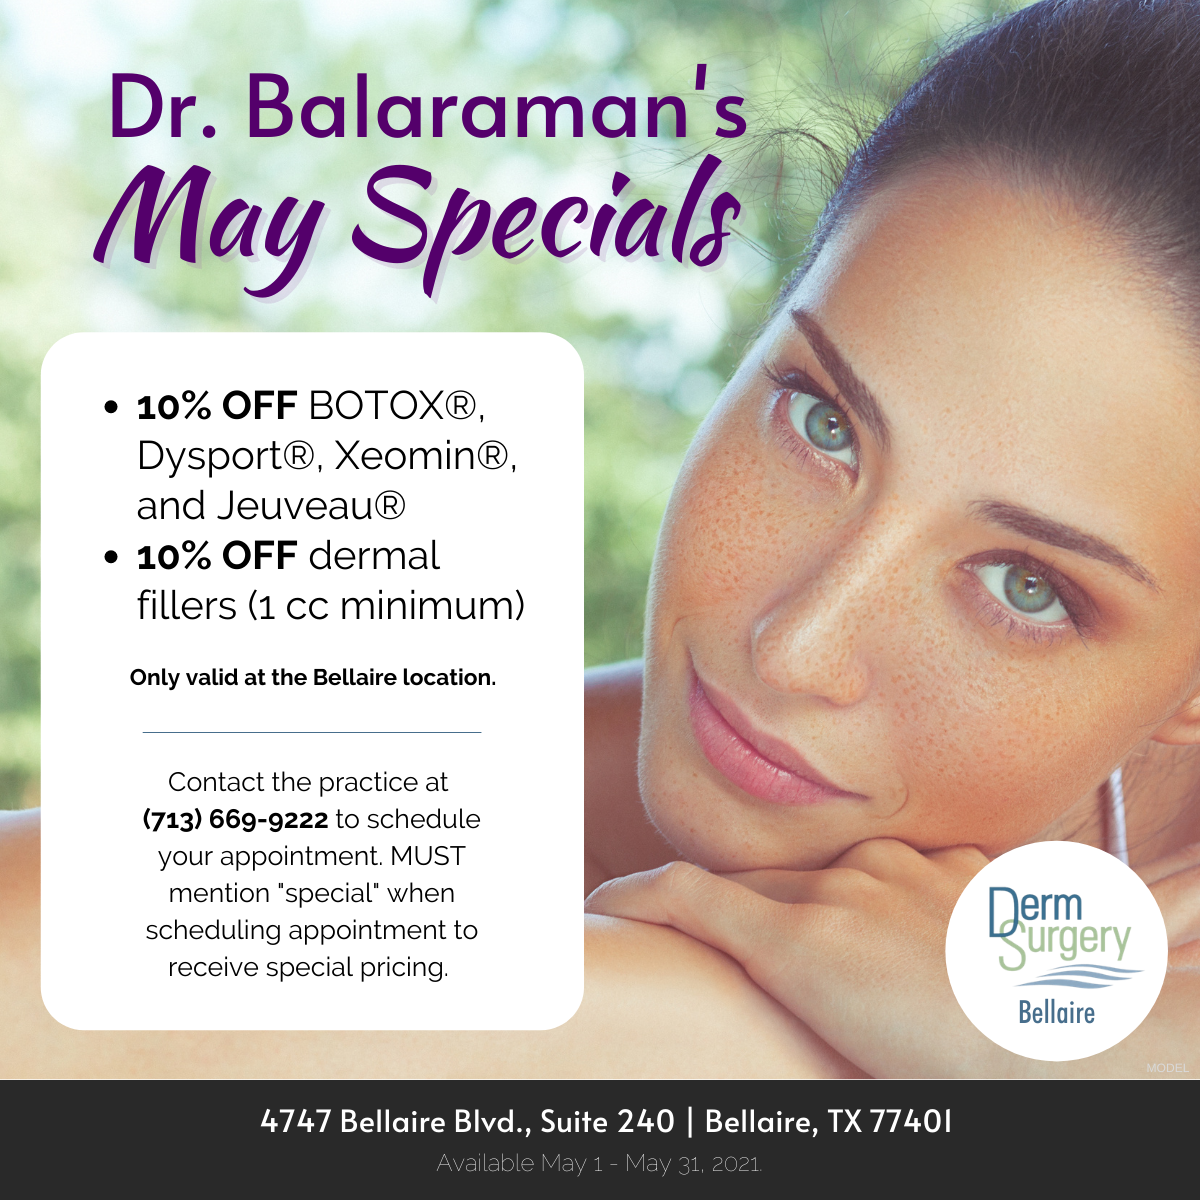 Dr. Balaraman's May Specials